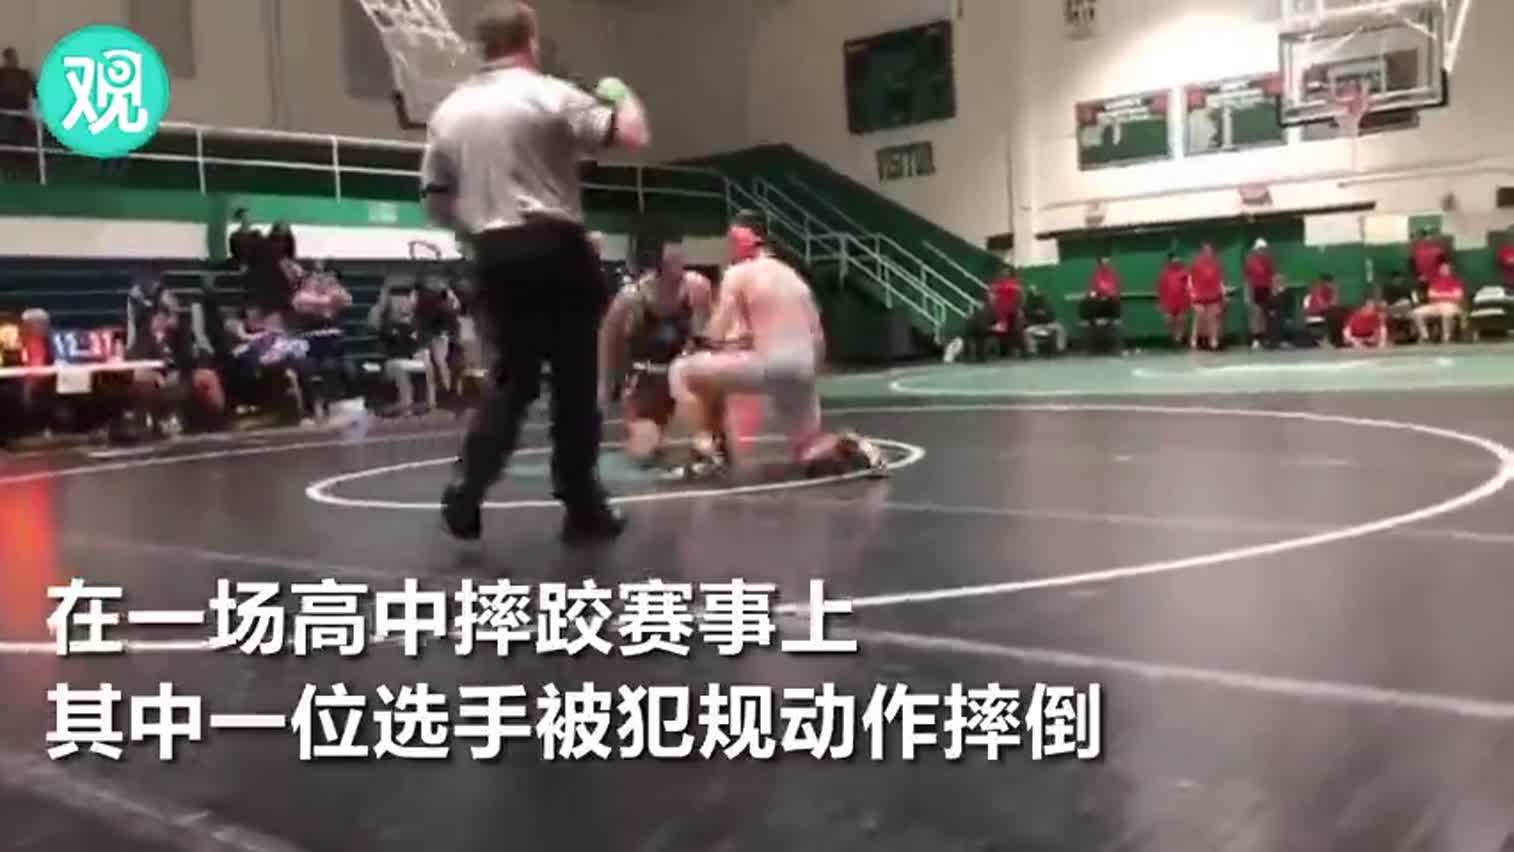 视频-见儿子被犯规动作摔倒 父亲冲上赛场推到对手